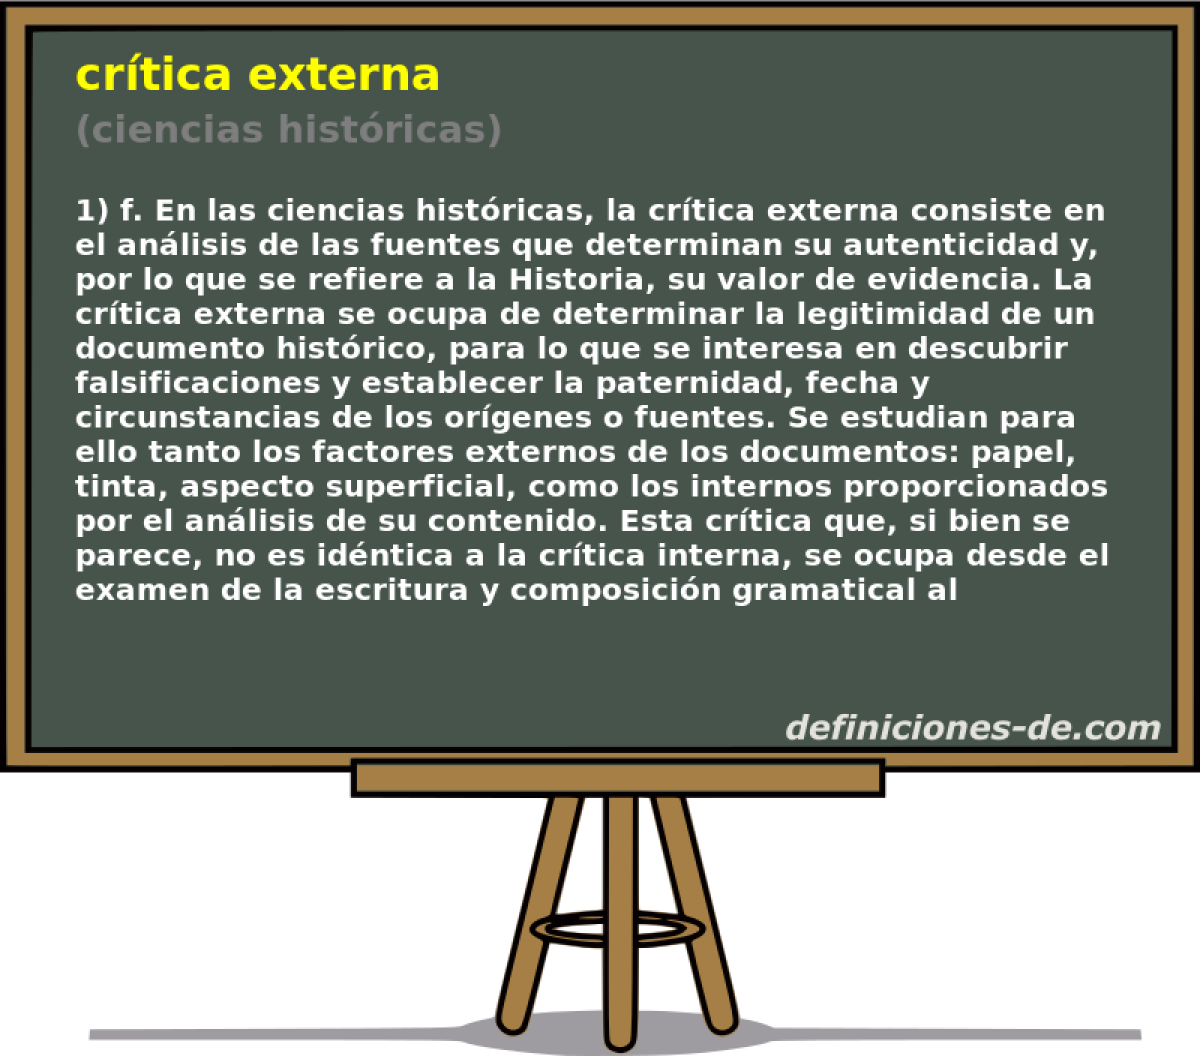 crtica externa (ciencias histricas)